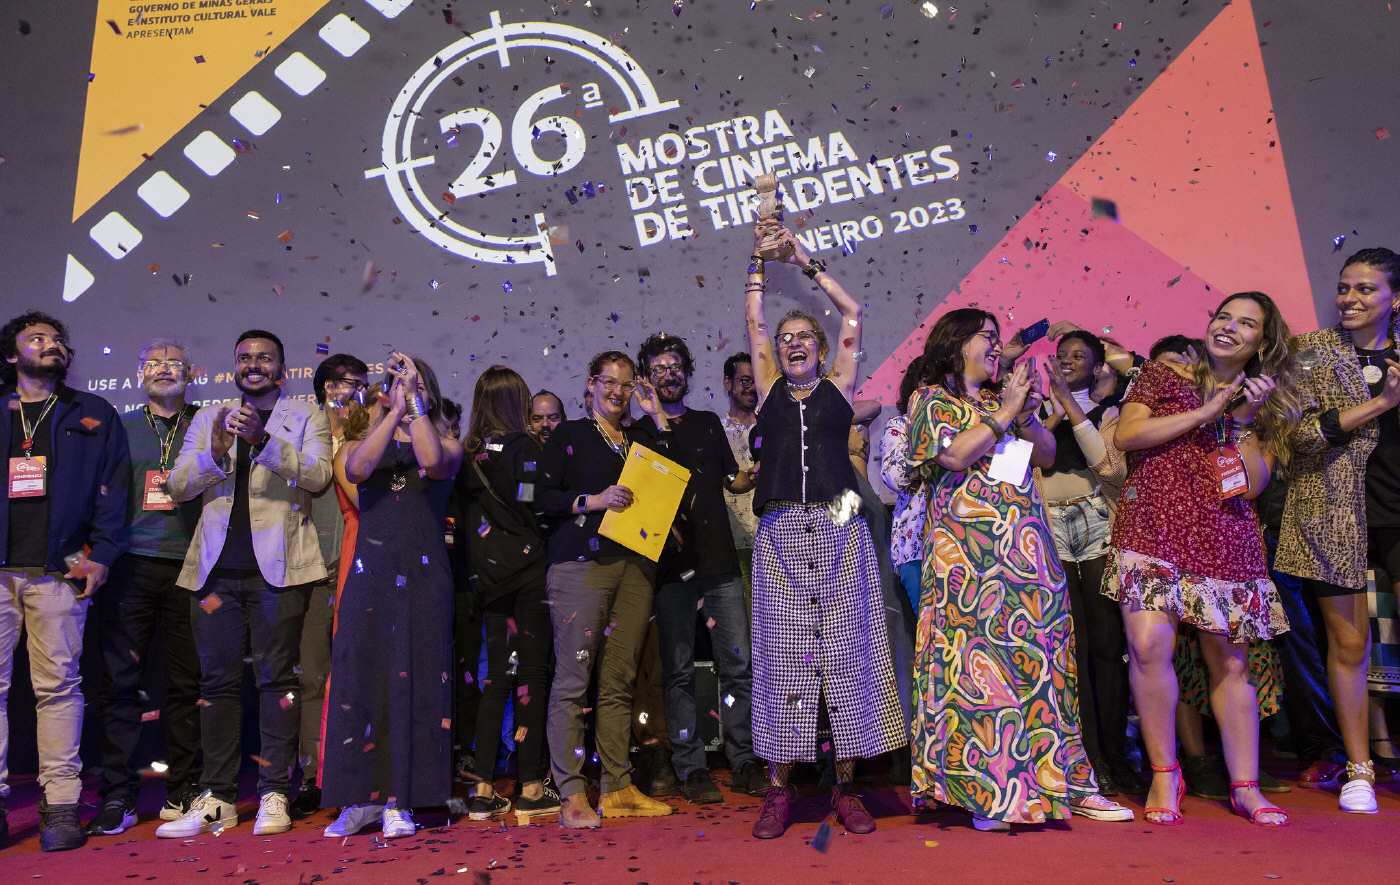 Vencedores da 26ª Mostra de Cinema de Tiradentes - Foto Leo Lara/Universo Produção